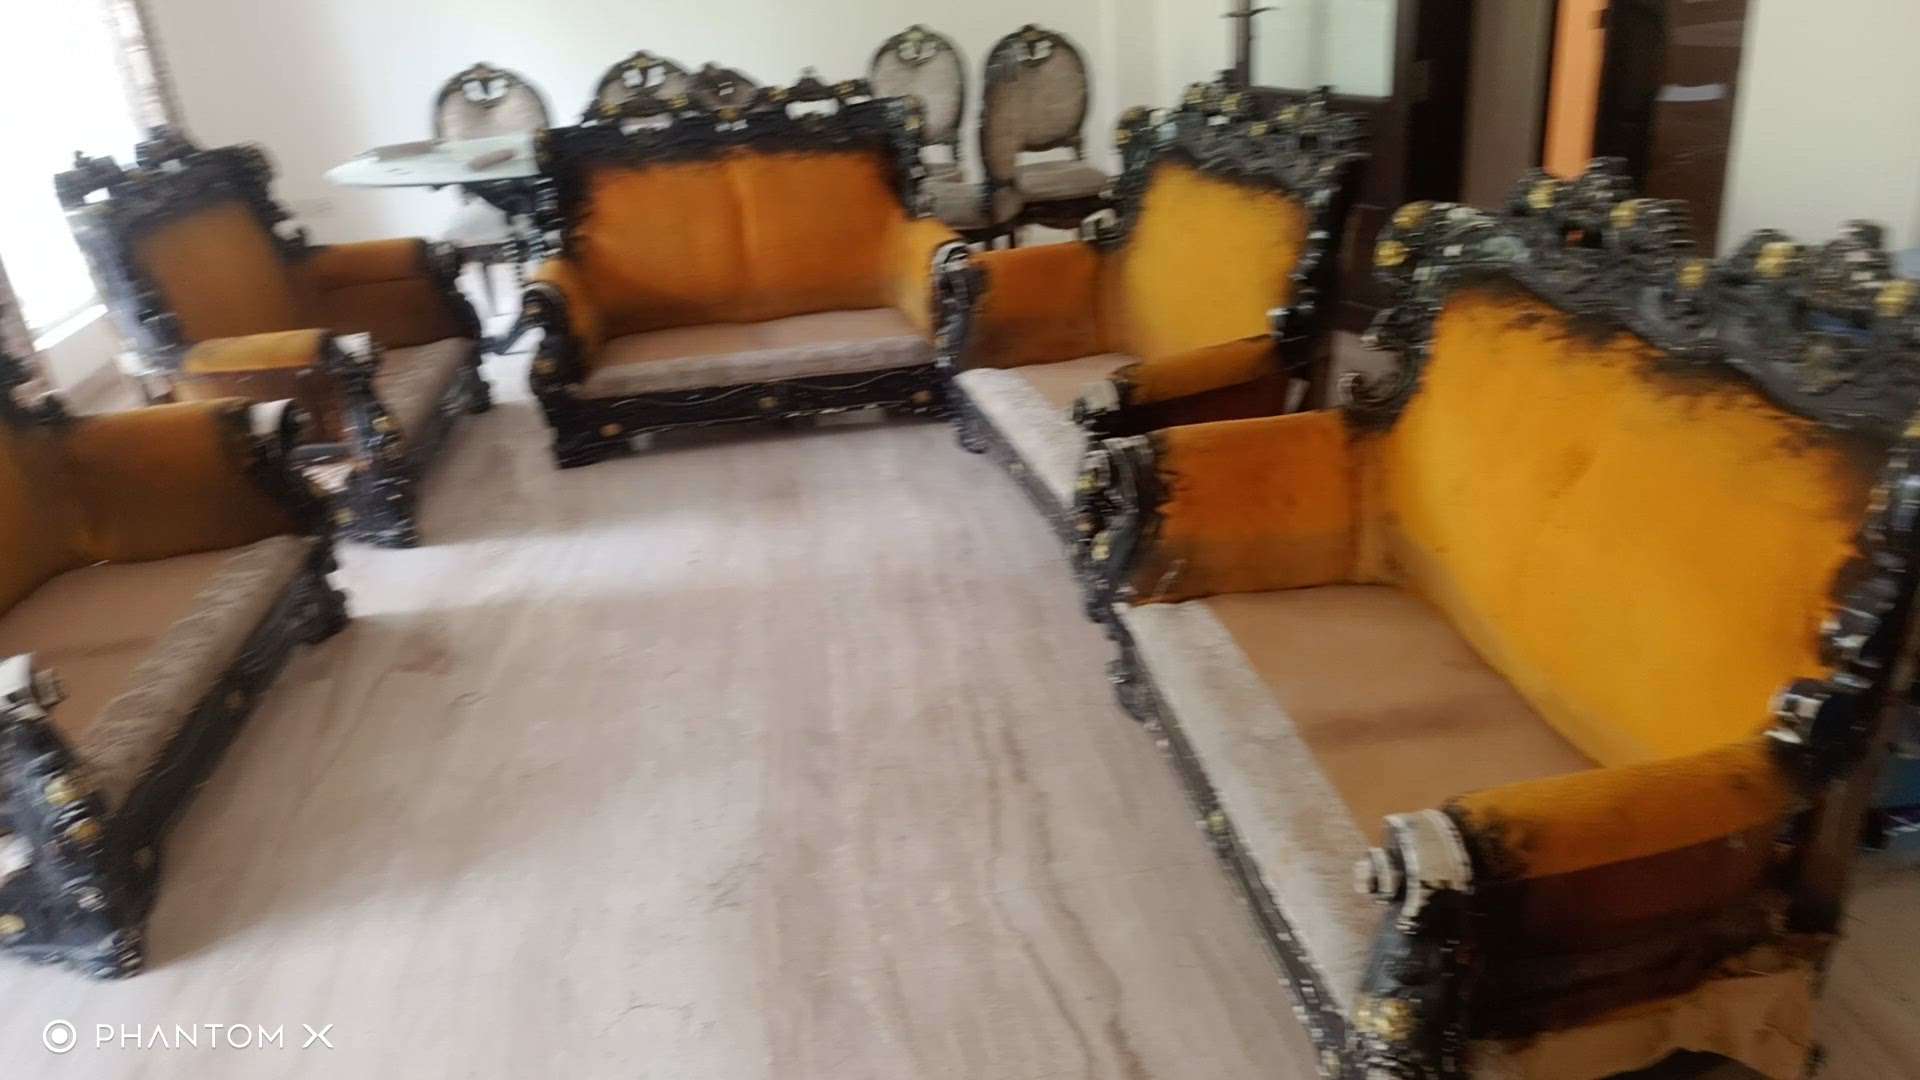 Hasan Zaidi new sofa design banate hain sofa repair karte Hain Delhi NCR kam karte Hain
7060390817